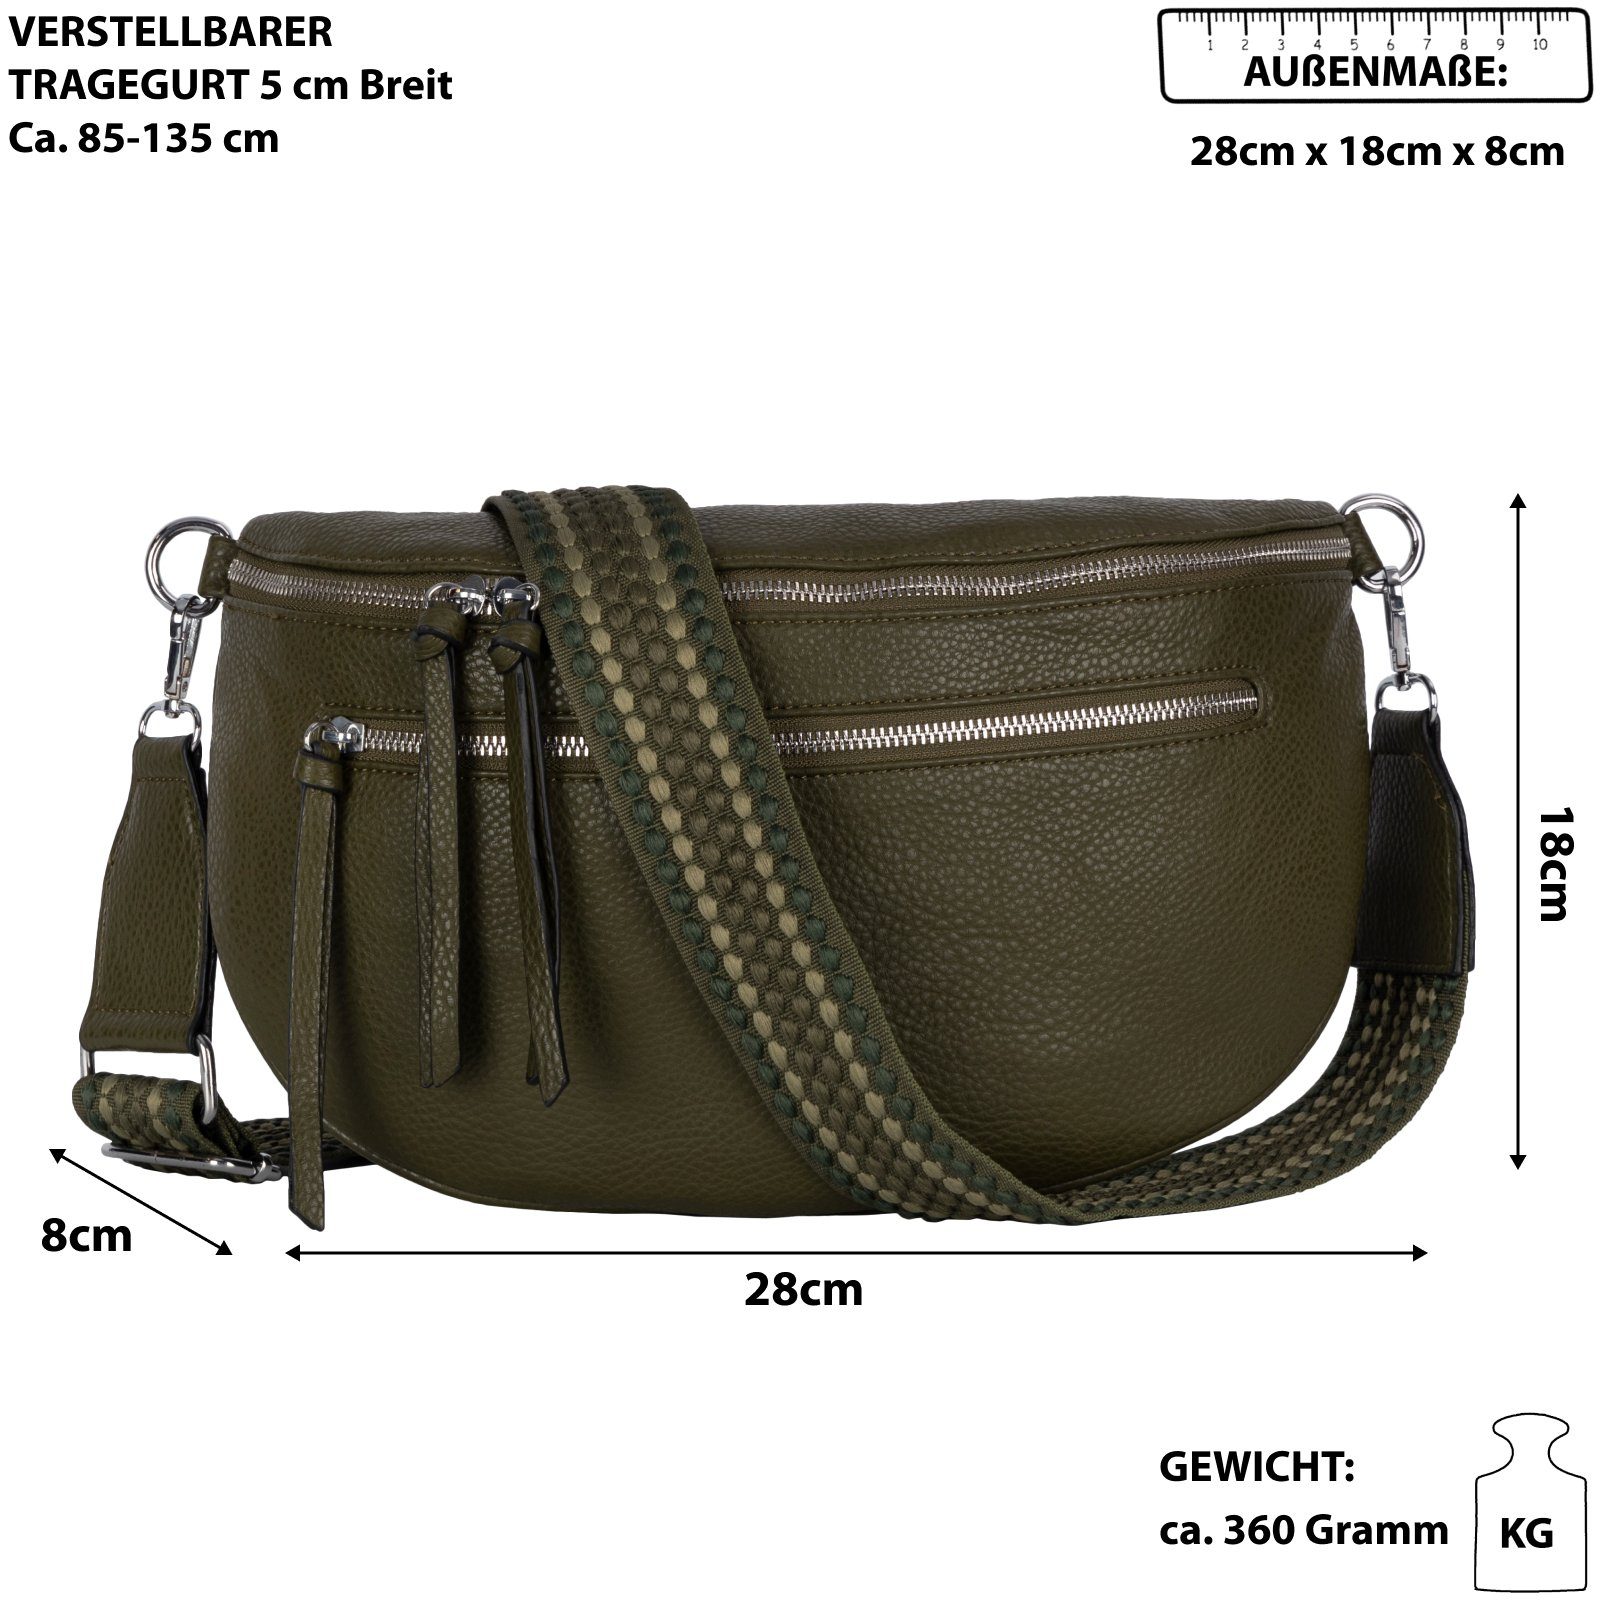 EAAKIE Gürteltasche Bauchtasche CrossOver, Hüfttasche Italy-D, tragbar Umhängetasche Umhängetasche DARK GREEN Kunstleder Schultertasche, als Crossbody-Bag